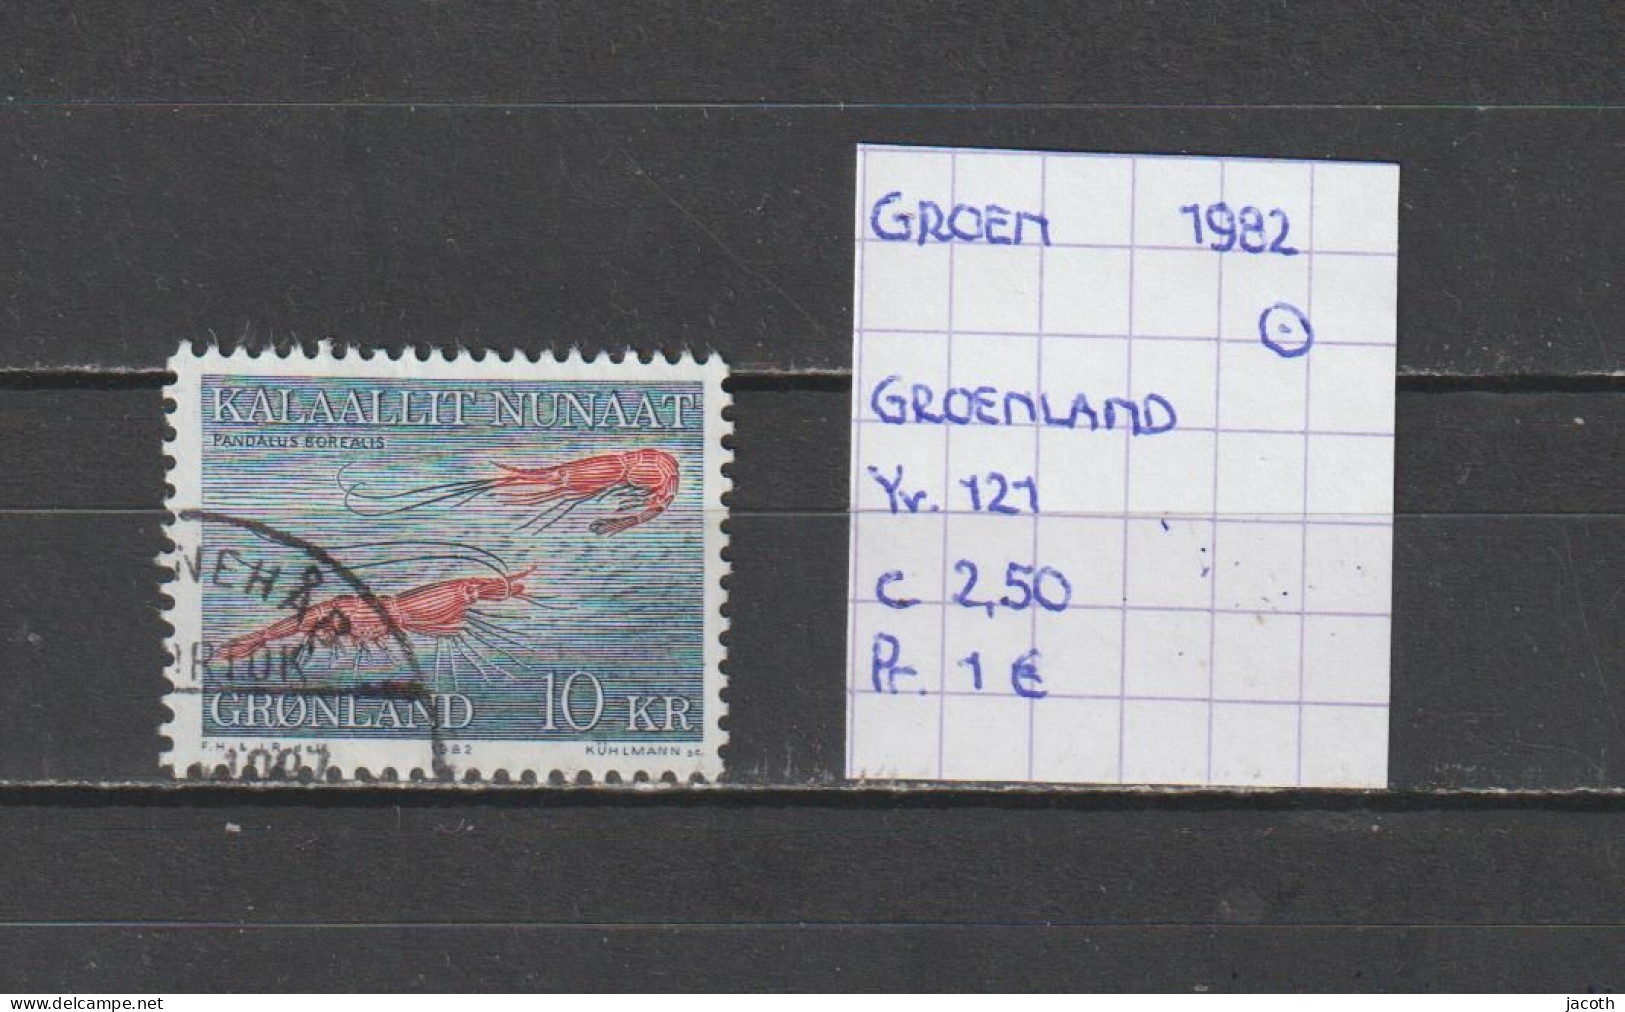 (TJ) Groenland 1982 - YT 121 (gest./obl./used) - Gebruikt